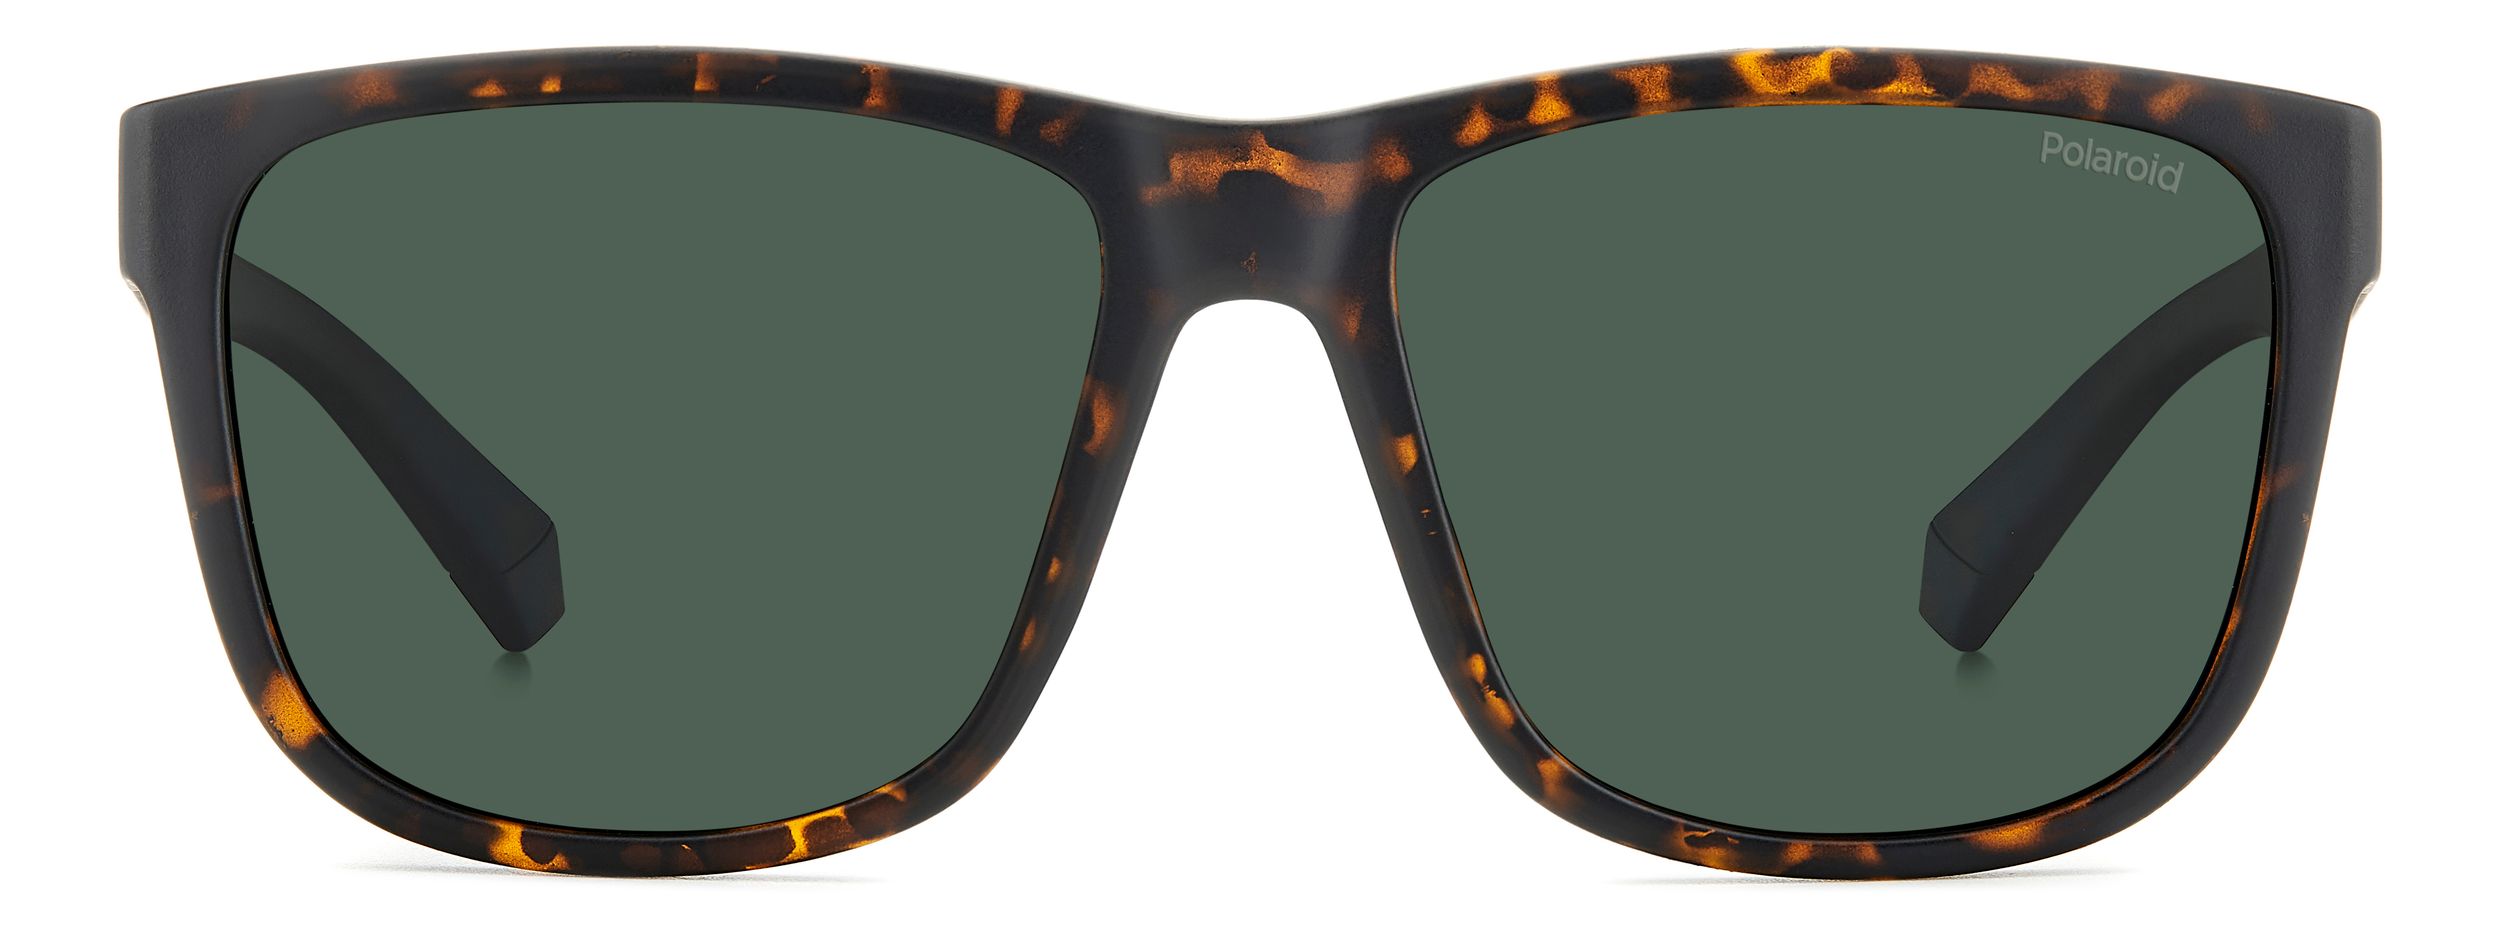 Image of Polariod 2155/S Men's Sunglasses